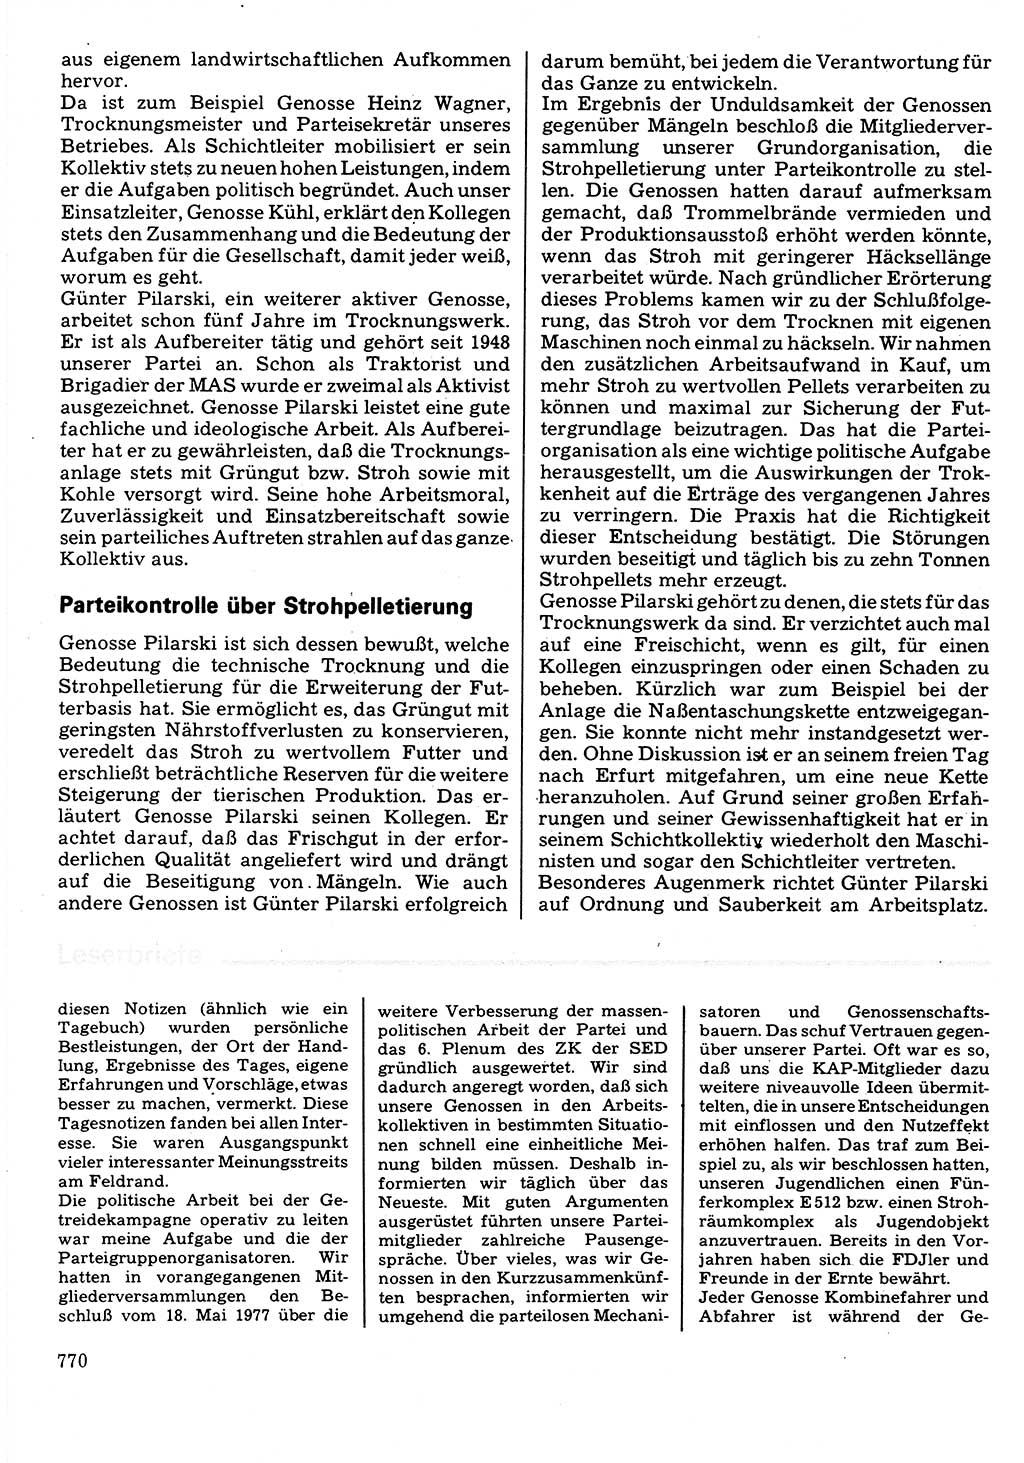 Neuer Weg (NW), Organ des Zentralkomitees (ZK) der SED (Sozialistische Einheitspartei Deutschlands) für Fragen des Parteilebens, 32. Jahrgang [Deutsche Demokratische Republik (DDR)] 1977, Seite 770 (NW ZK SED DDR 1977, S. 770)